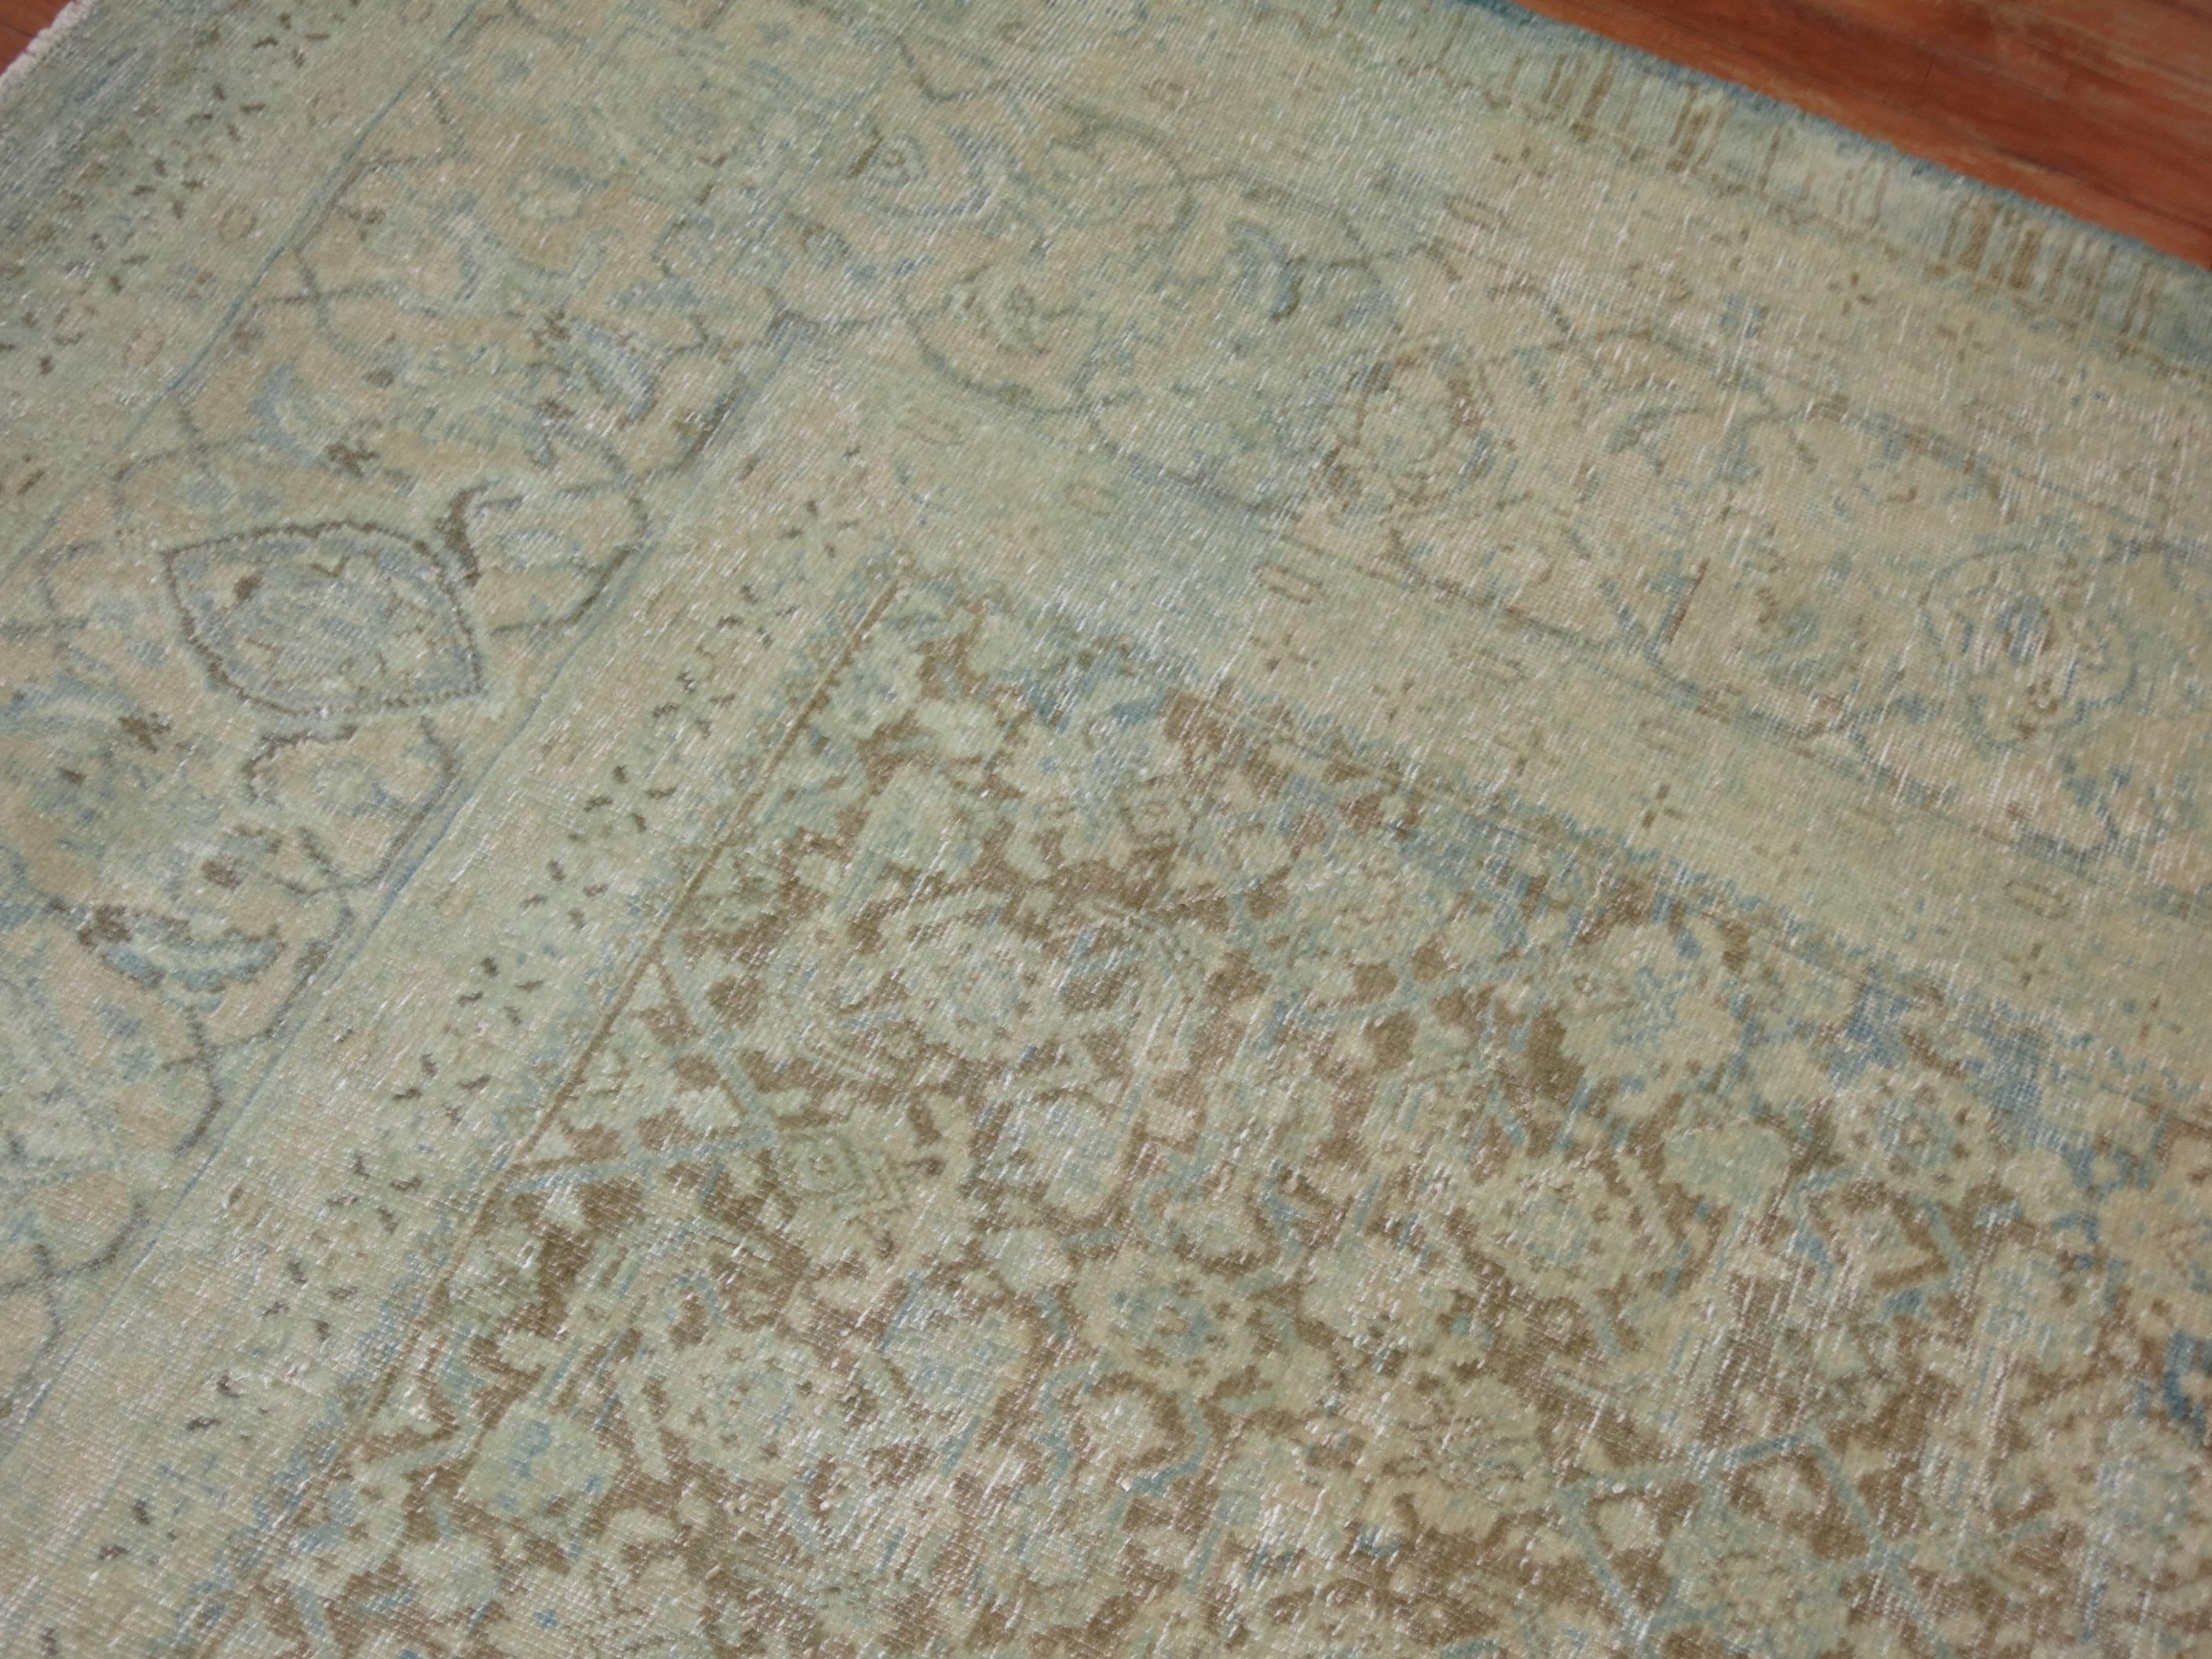 Ein übergroßer persischer Täbriz-Teppich in Braun- und Blautönen mit einem kleinteiligen Allover-Herati-Muster.

10'3'' x 17'

Die Teppichknüpfer von Täbris im späten 19. und frühen 20. Jahrhundert verfügten über ein vielfältiges Repertoire an